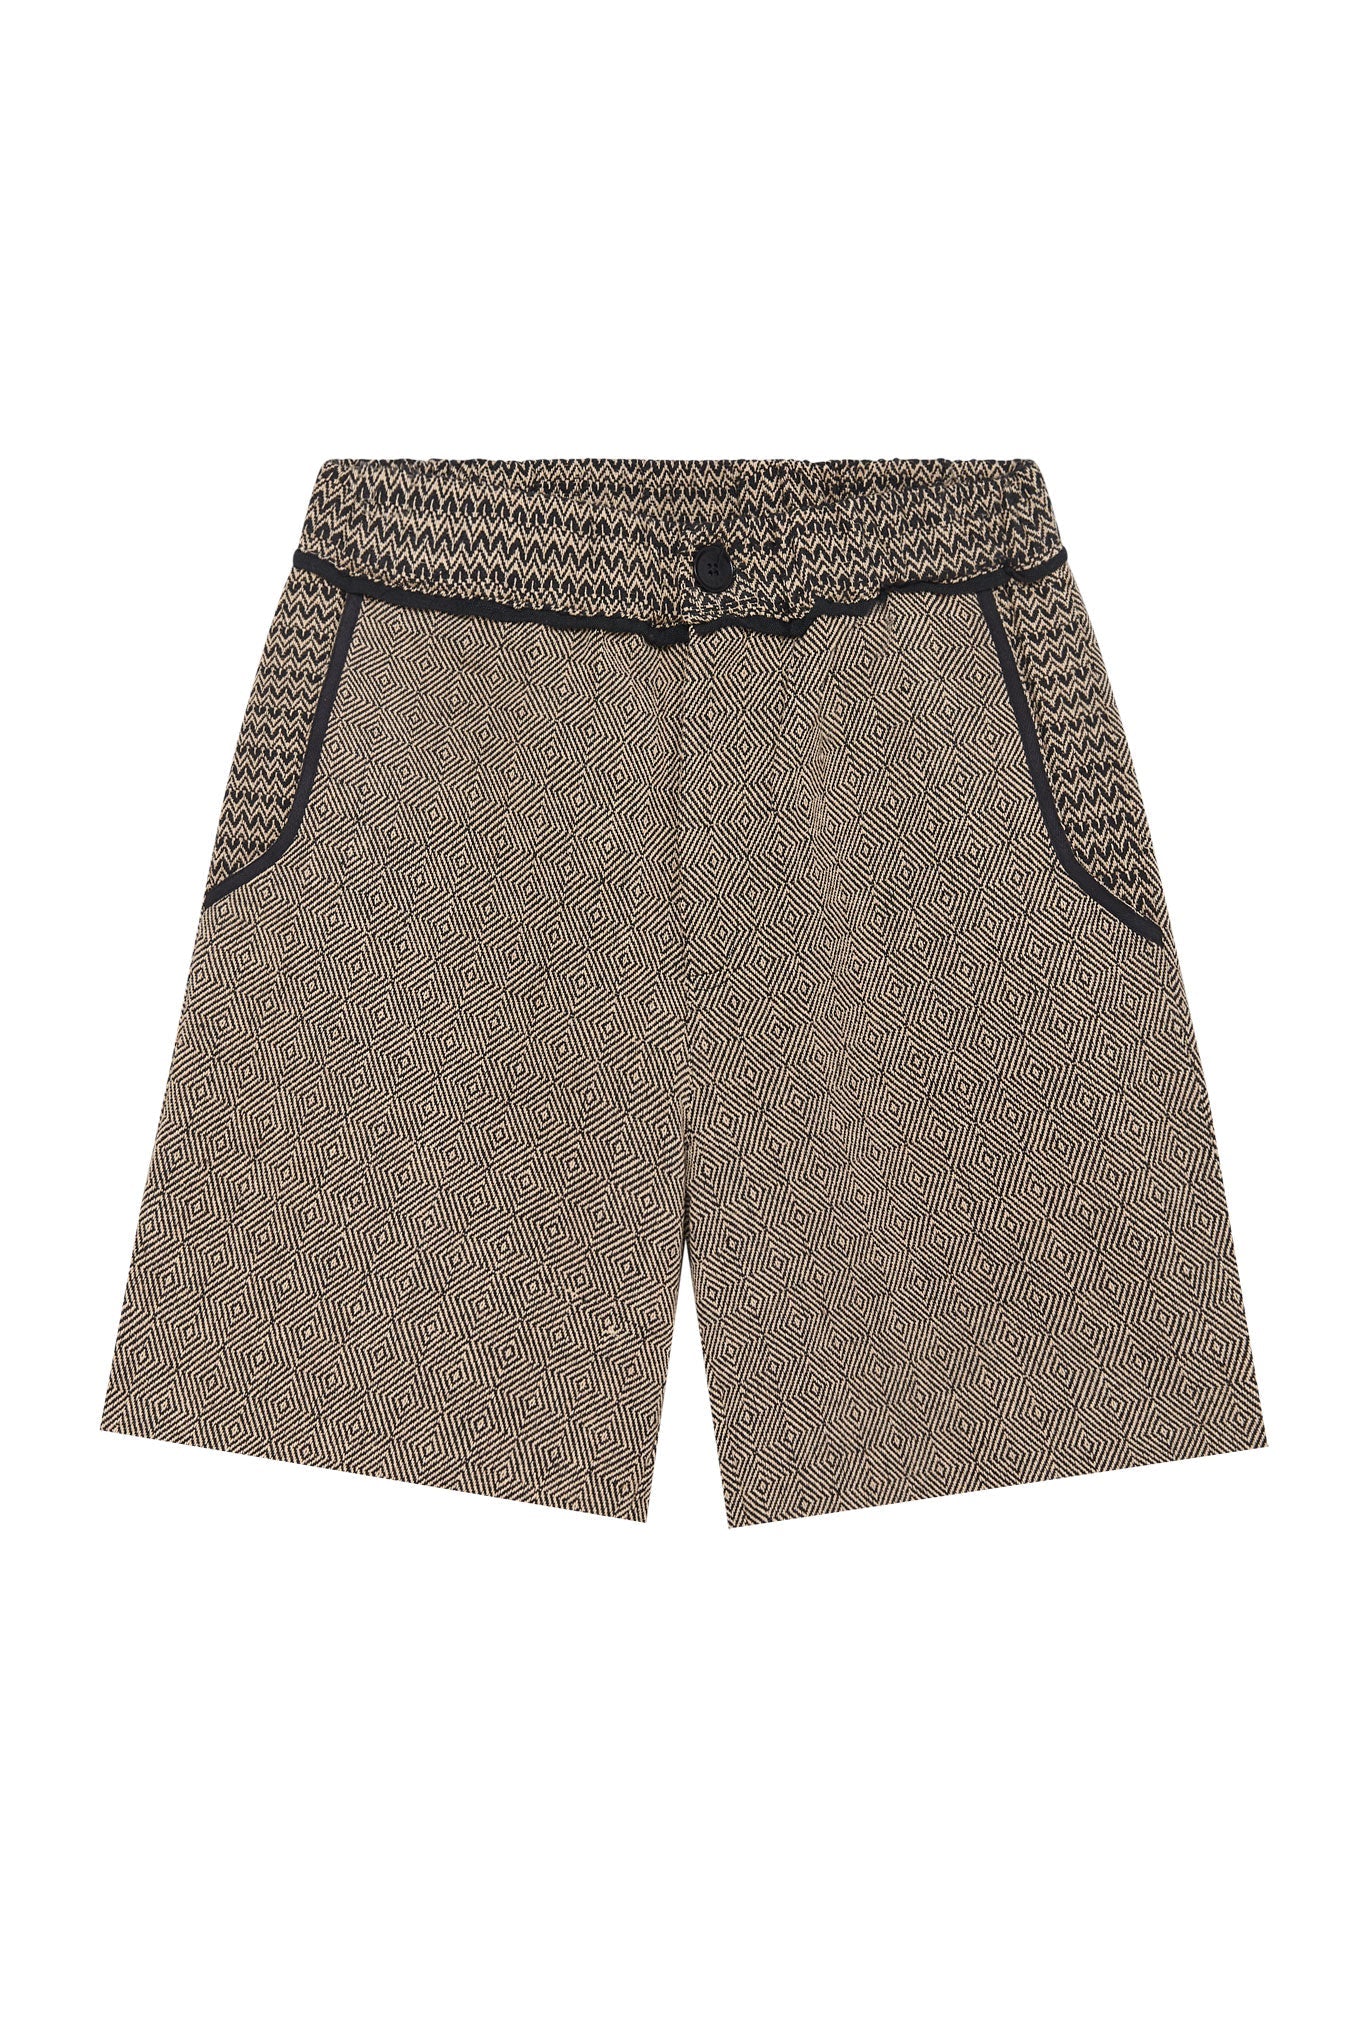 Hellbraune Patwork Shorts JOEY aus 100% Baumwolle von Komodo